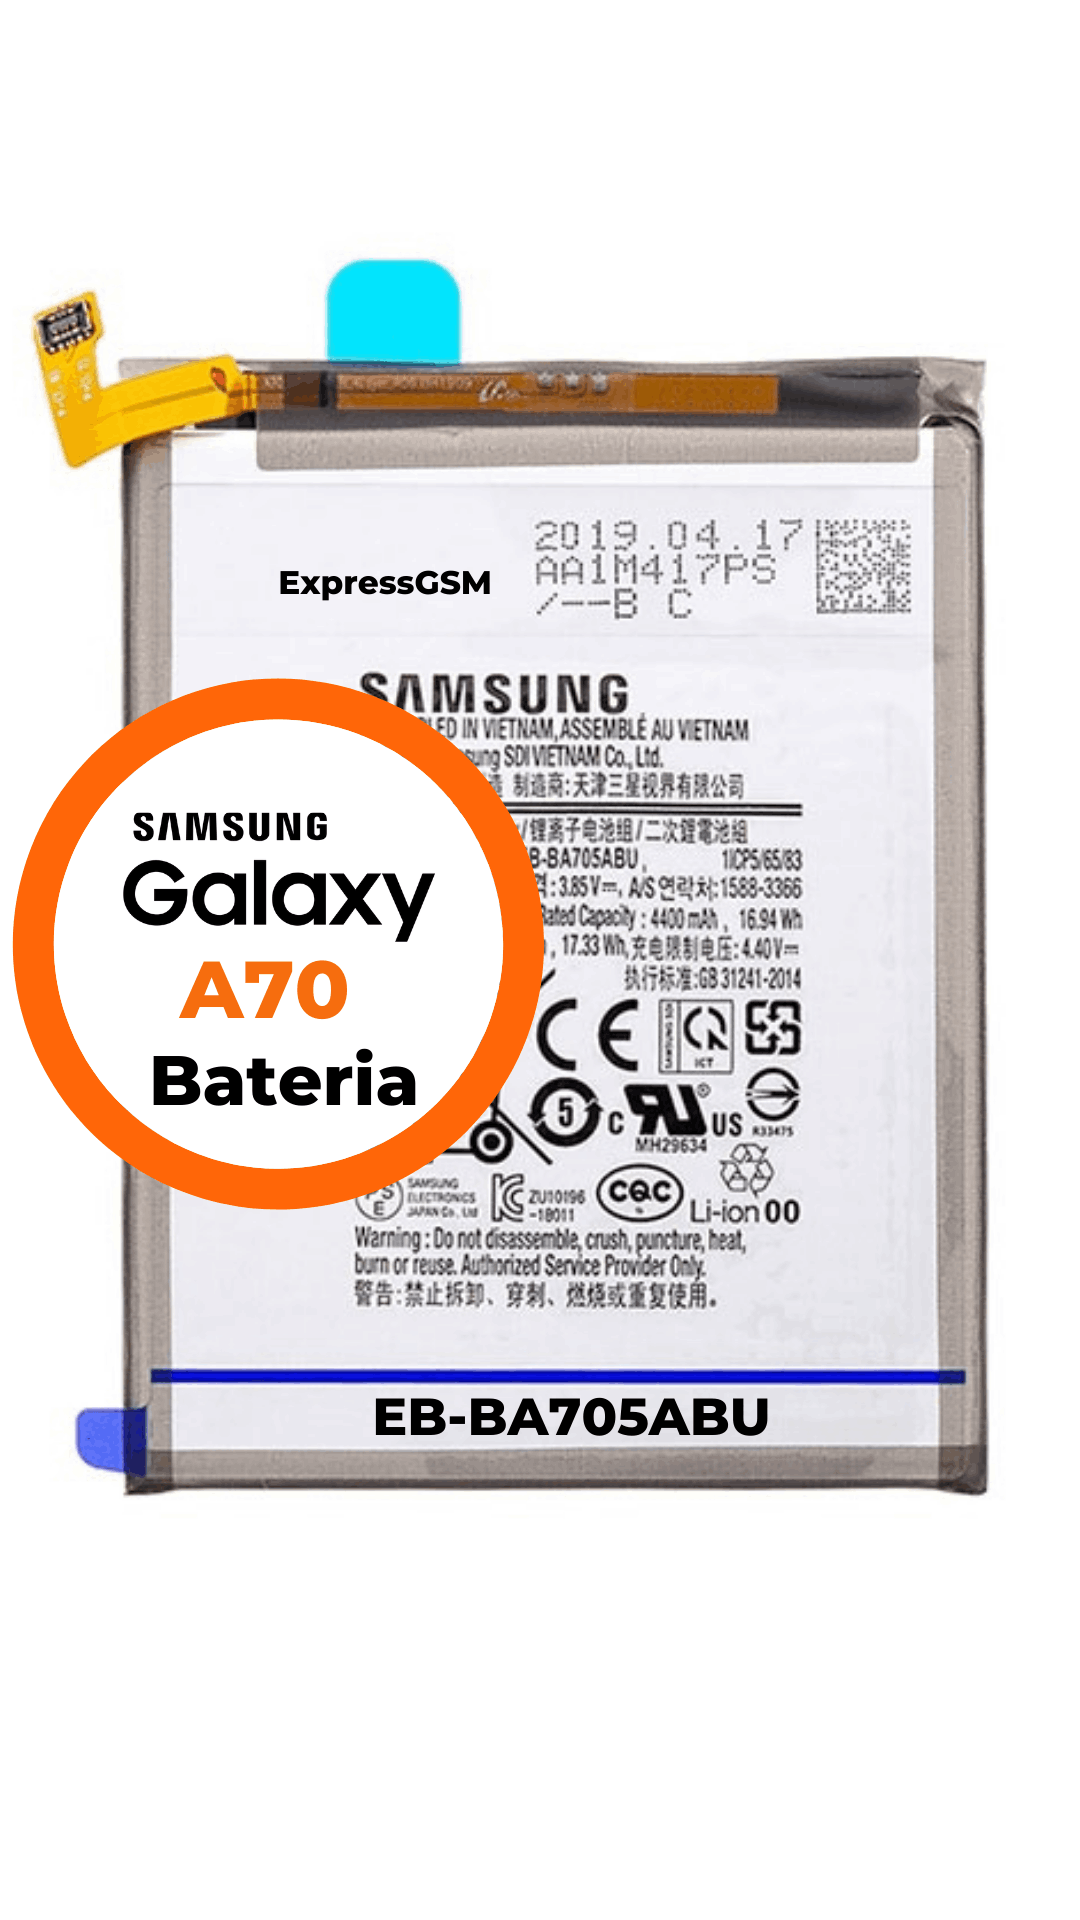 Samsung A70 Bateria